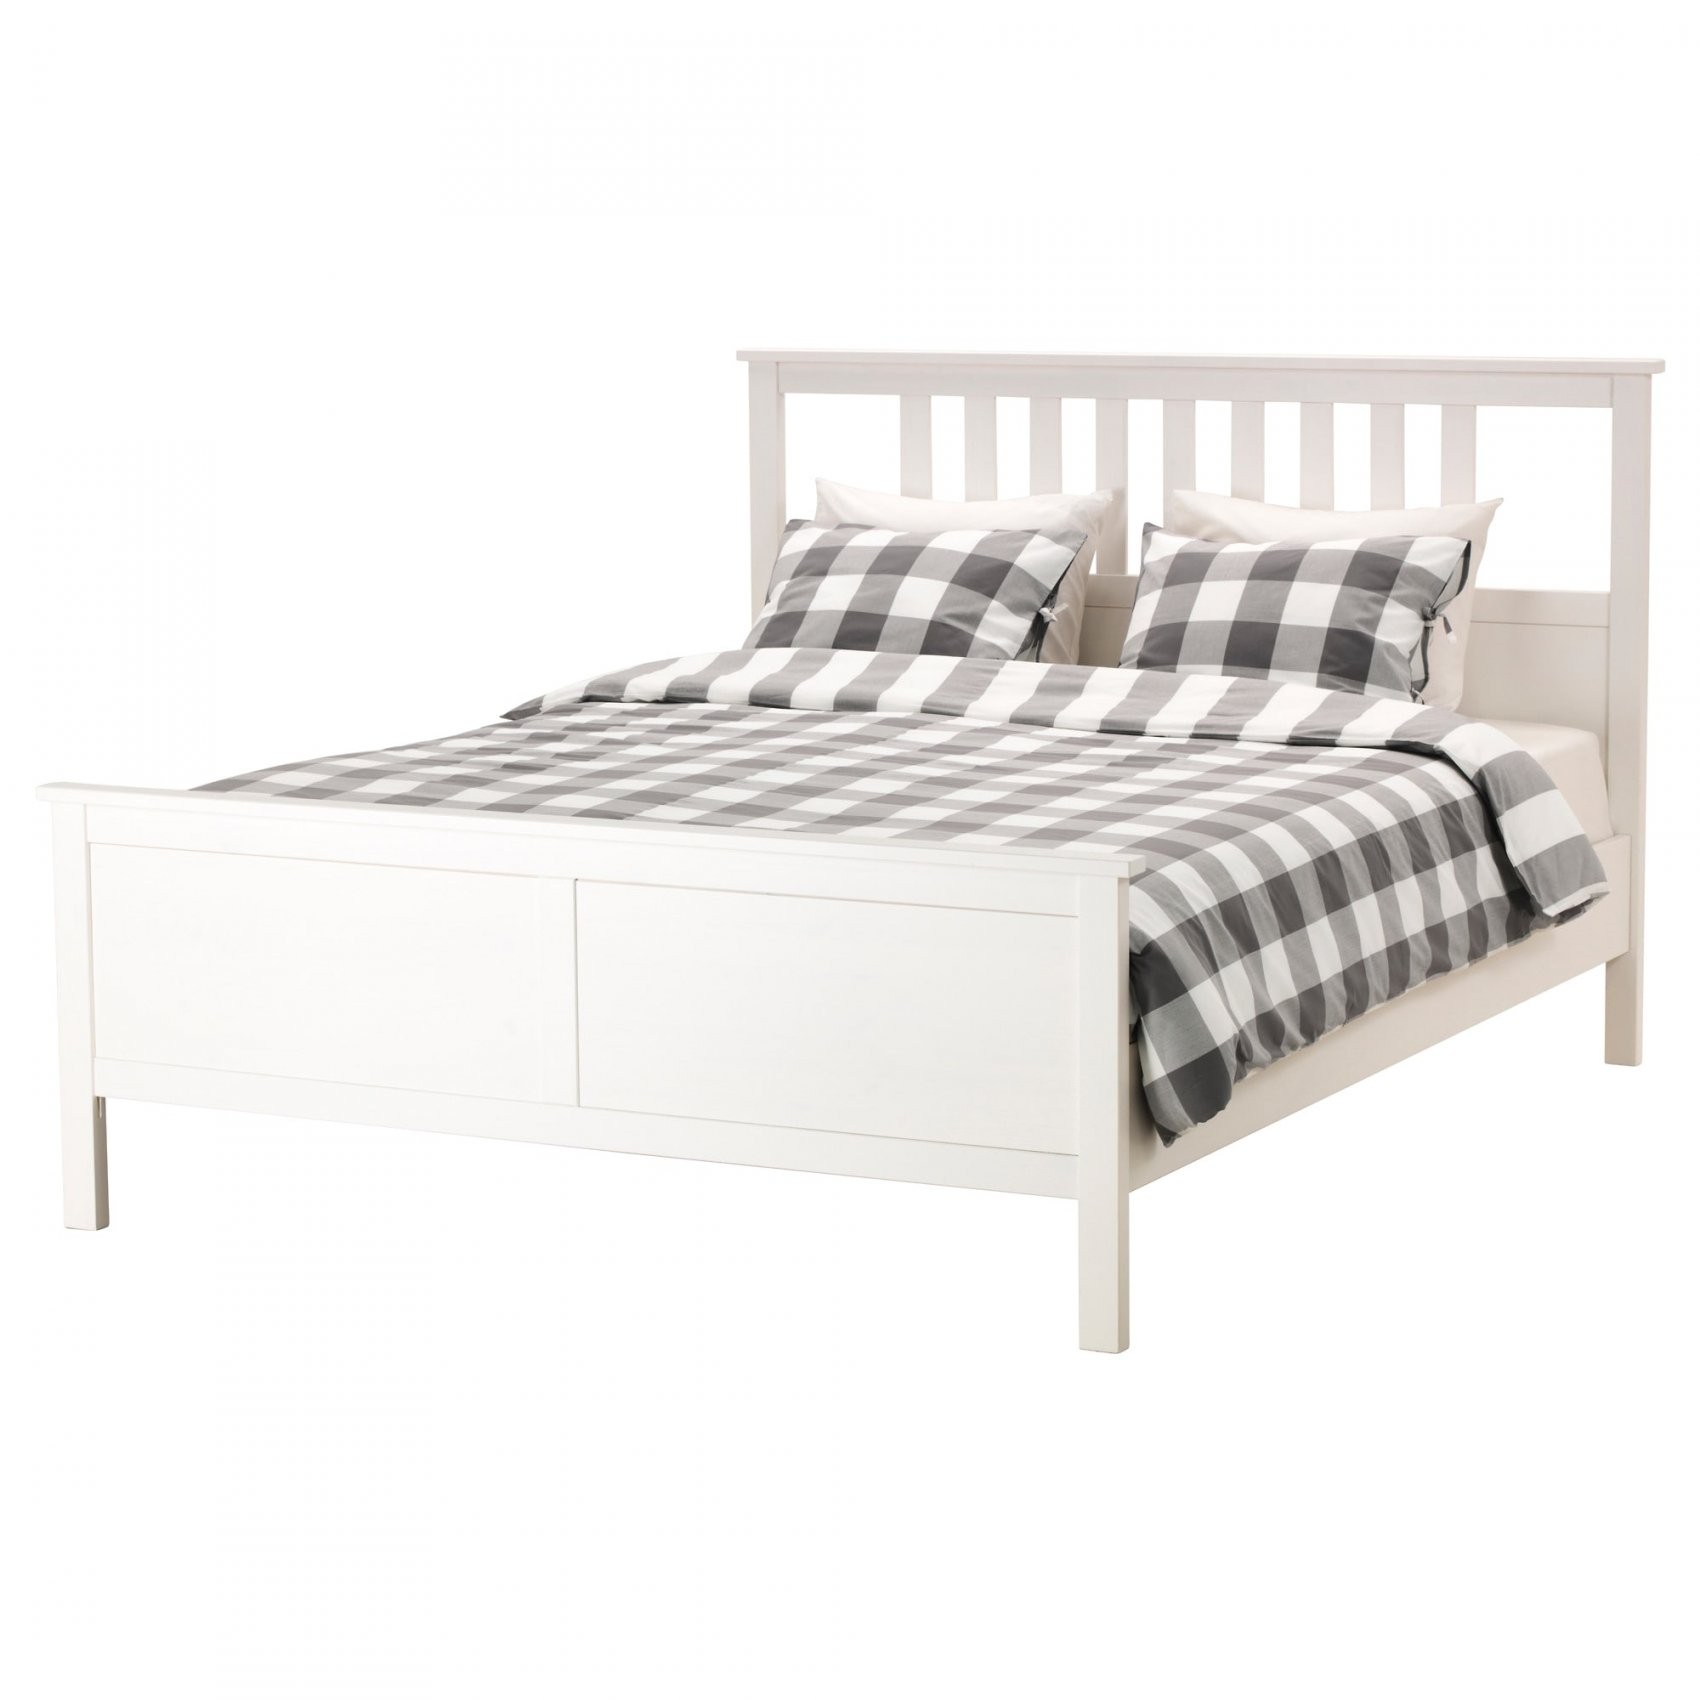 Super King Size Beds Ikea Avec Hemnes Bed Frame White Stain Lur C3 von King Size Bett 200X200 Bild